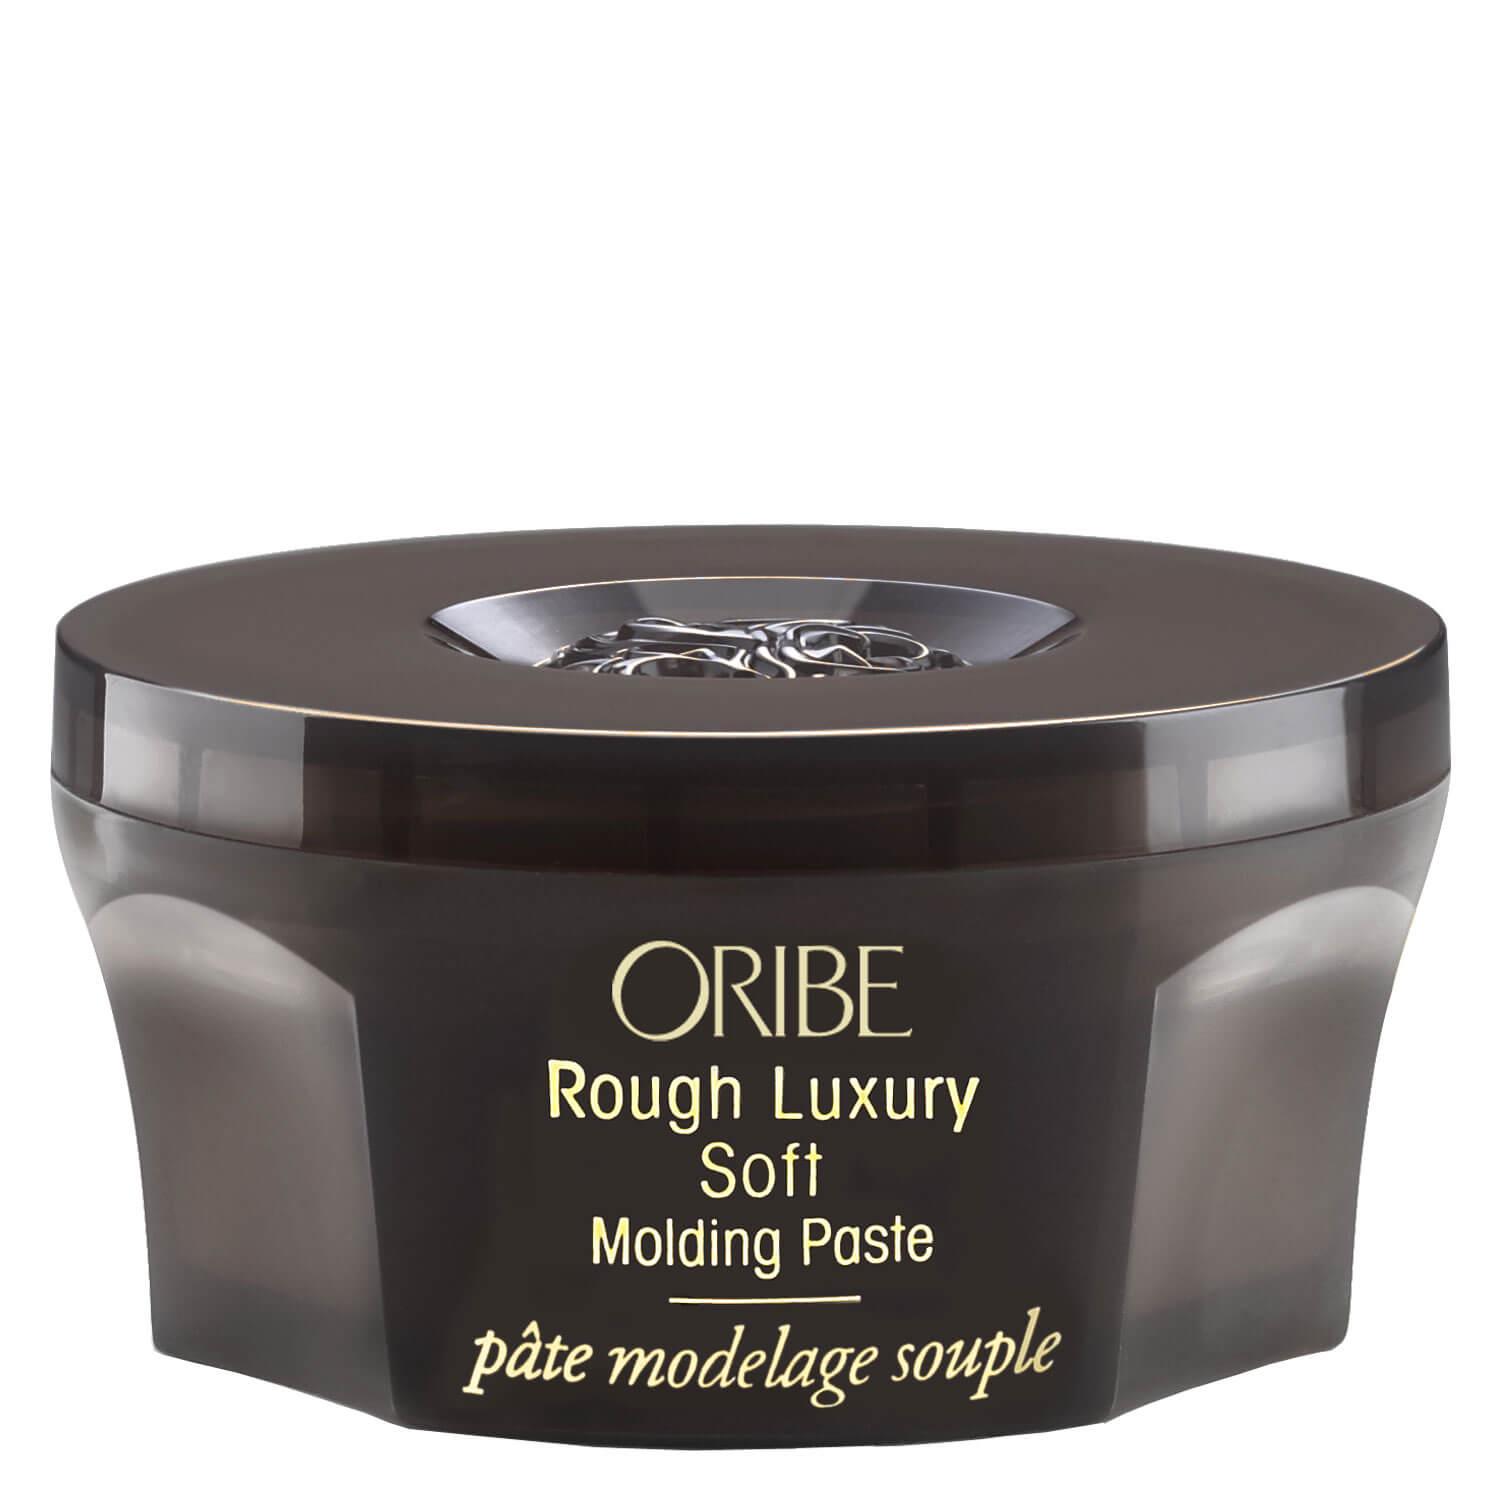 Oribe Style - Rough Luxury Soft Molding Paste